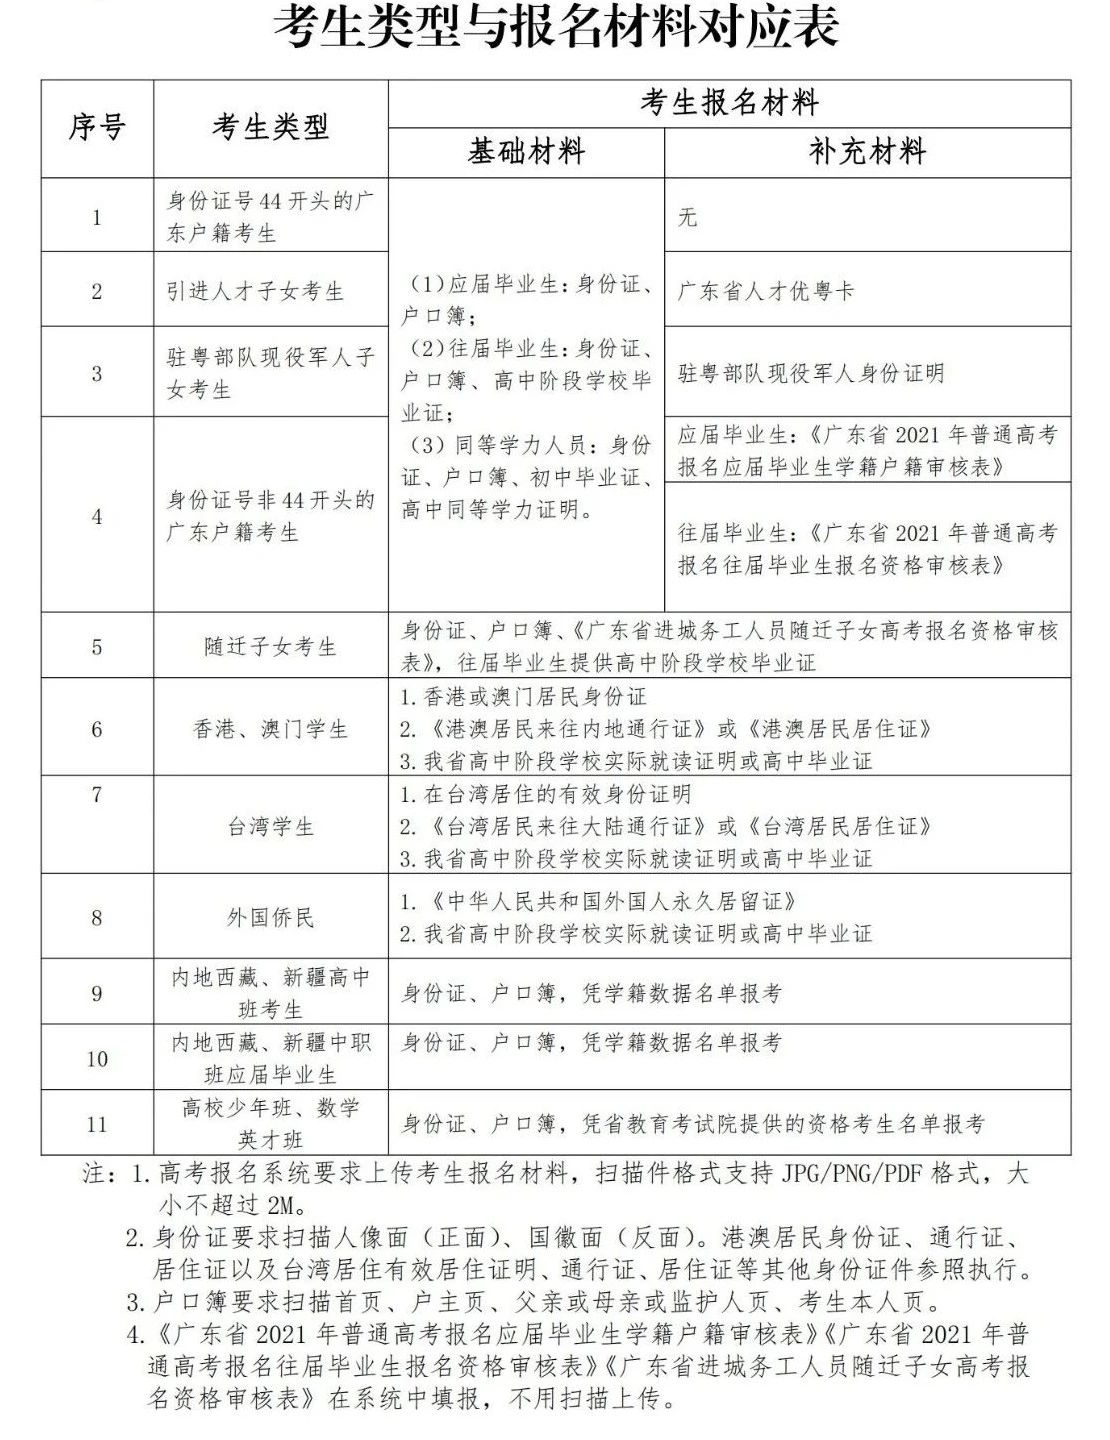 广东省2021年高考报名常见问答